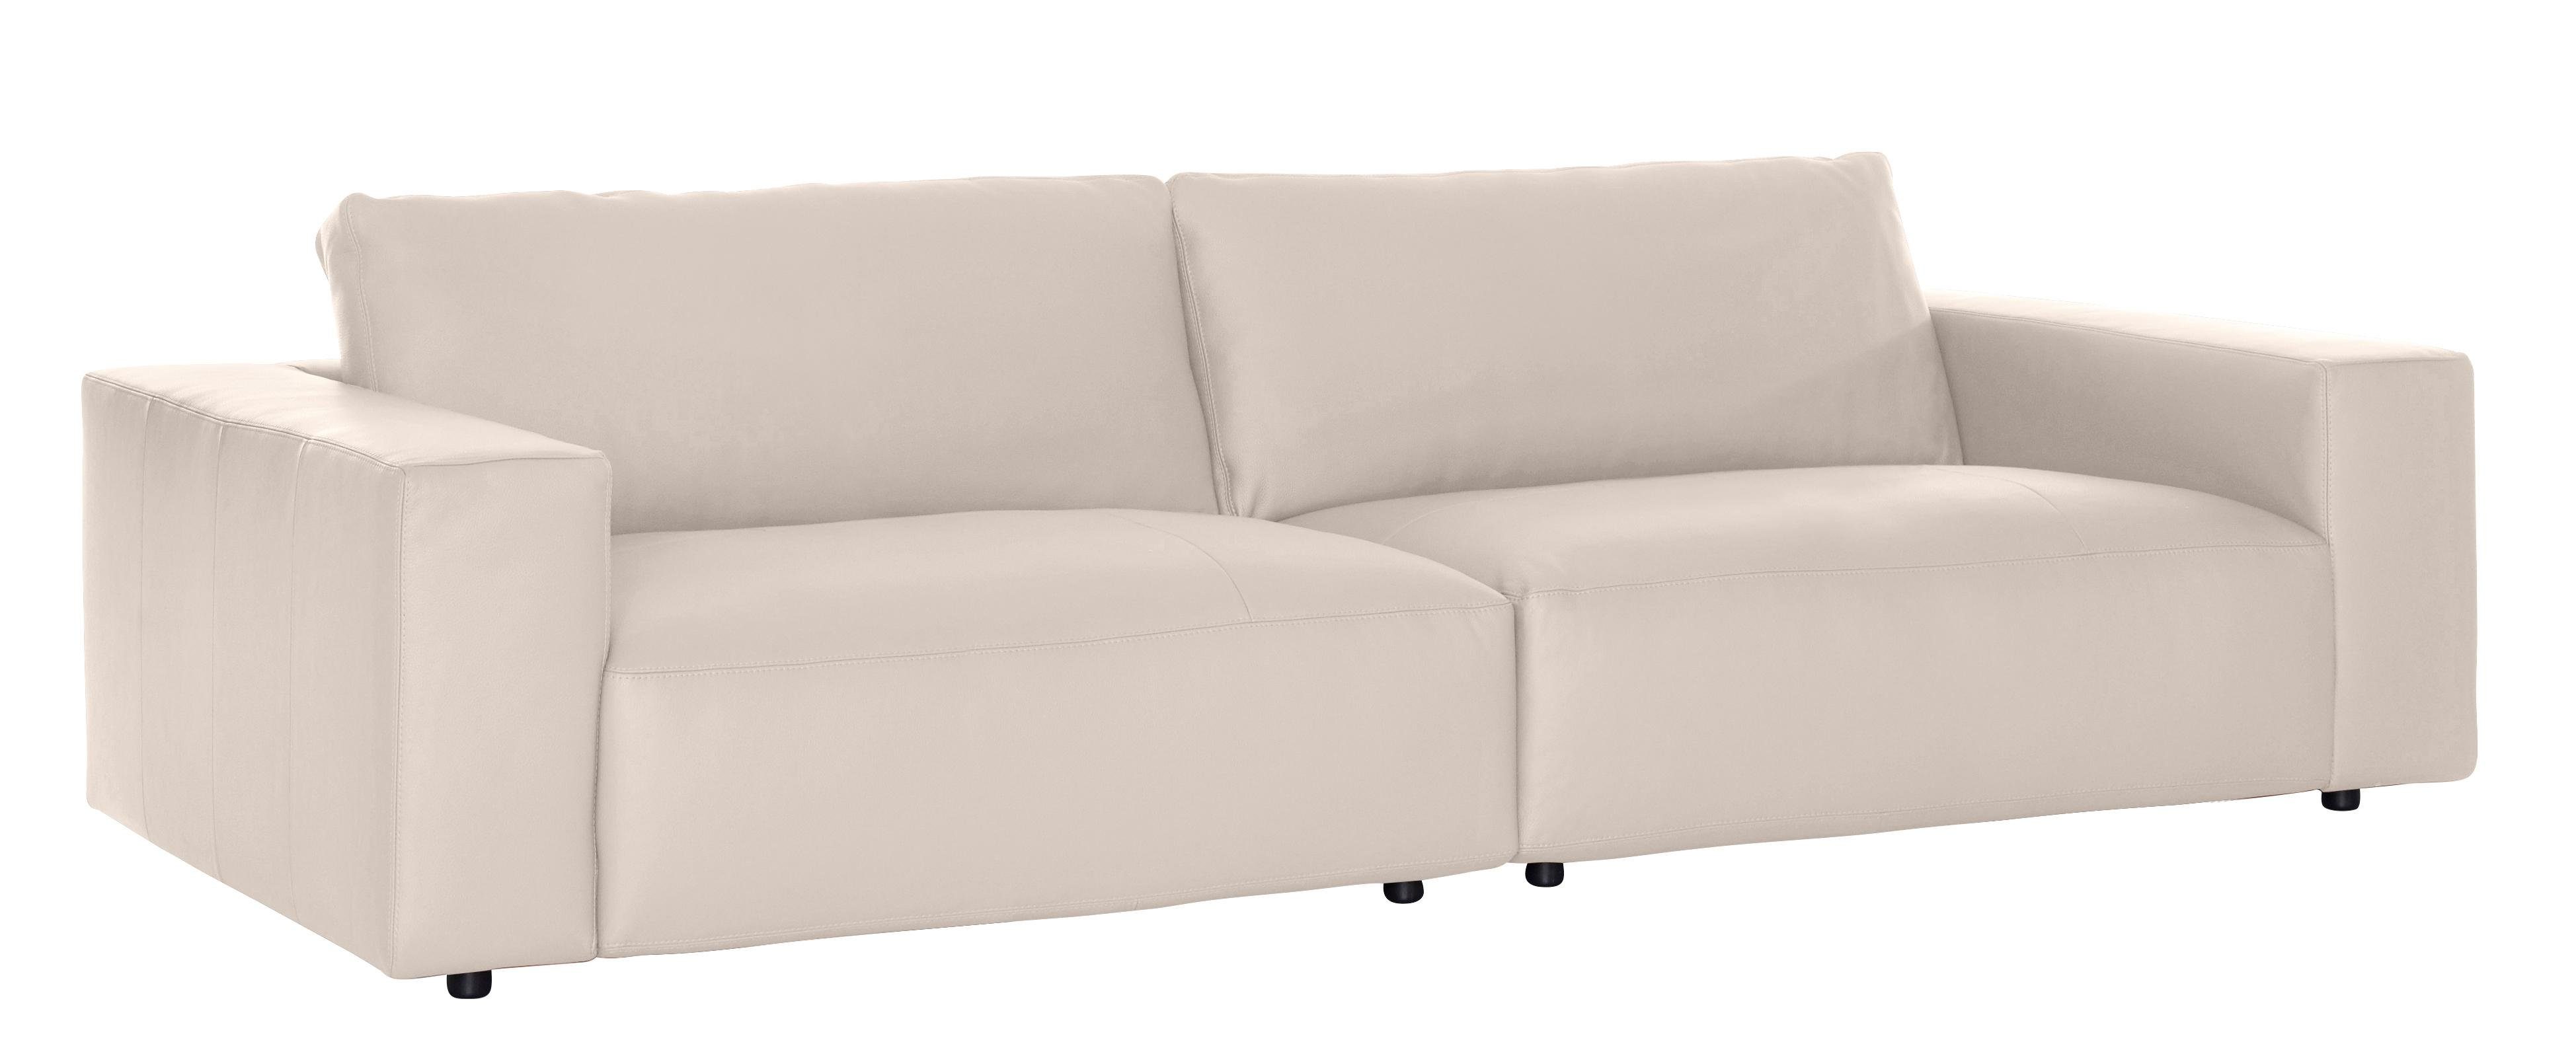 GALLERY und M vielen Qualitäten branded Musterring 4 Nähten, in Big-Sofa 3-Sitzer by LUCIA, unterschiedlichen